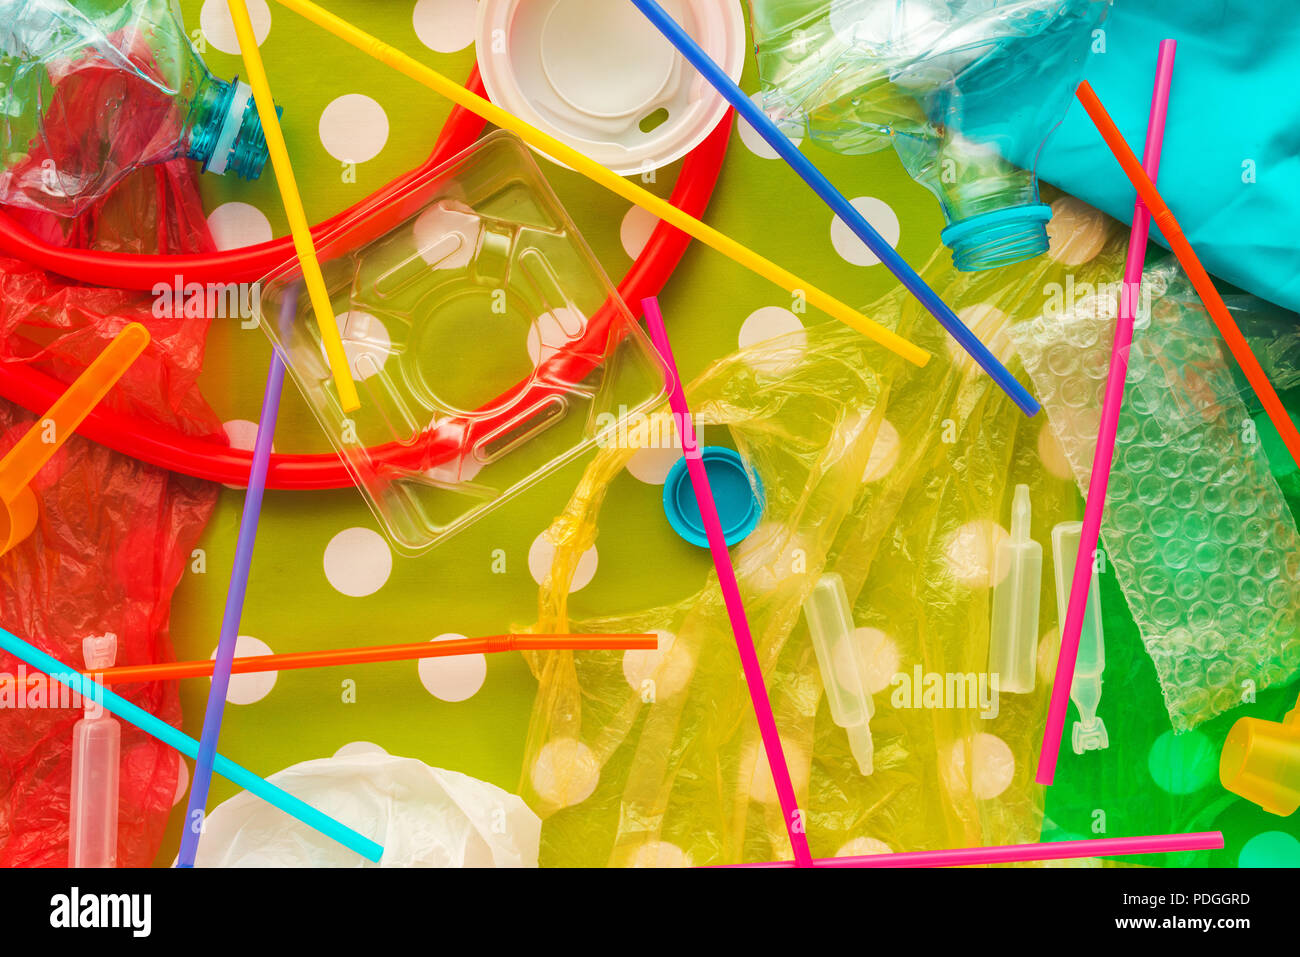 Déchets et ordures en plastique coloré pile, conceptual image de la pollution de l'environnement et à la consommation Banque D'Images